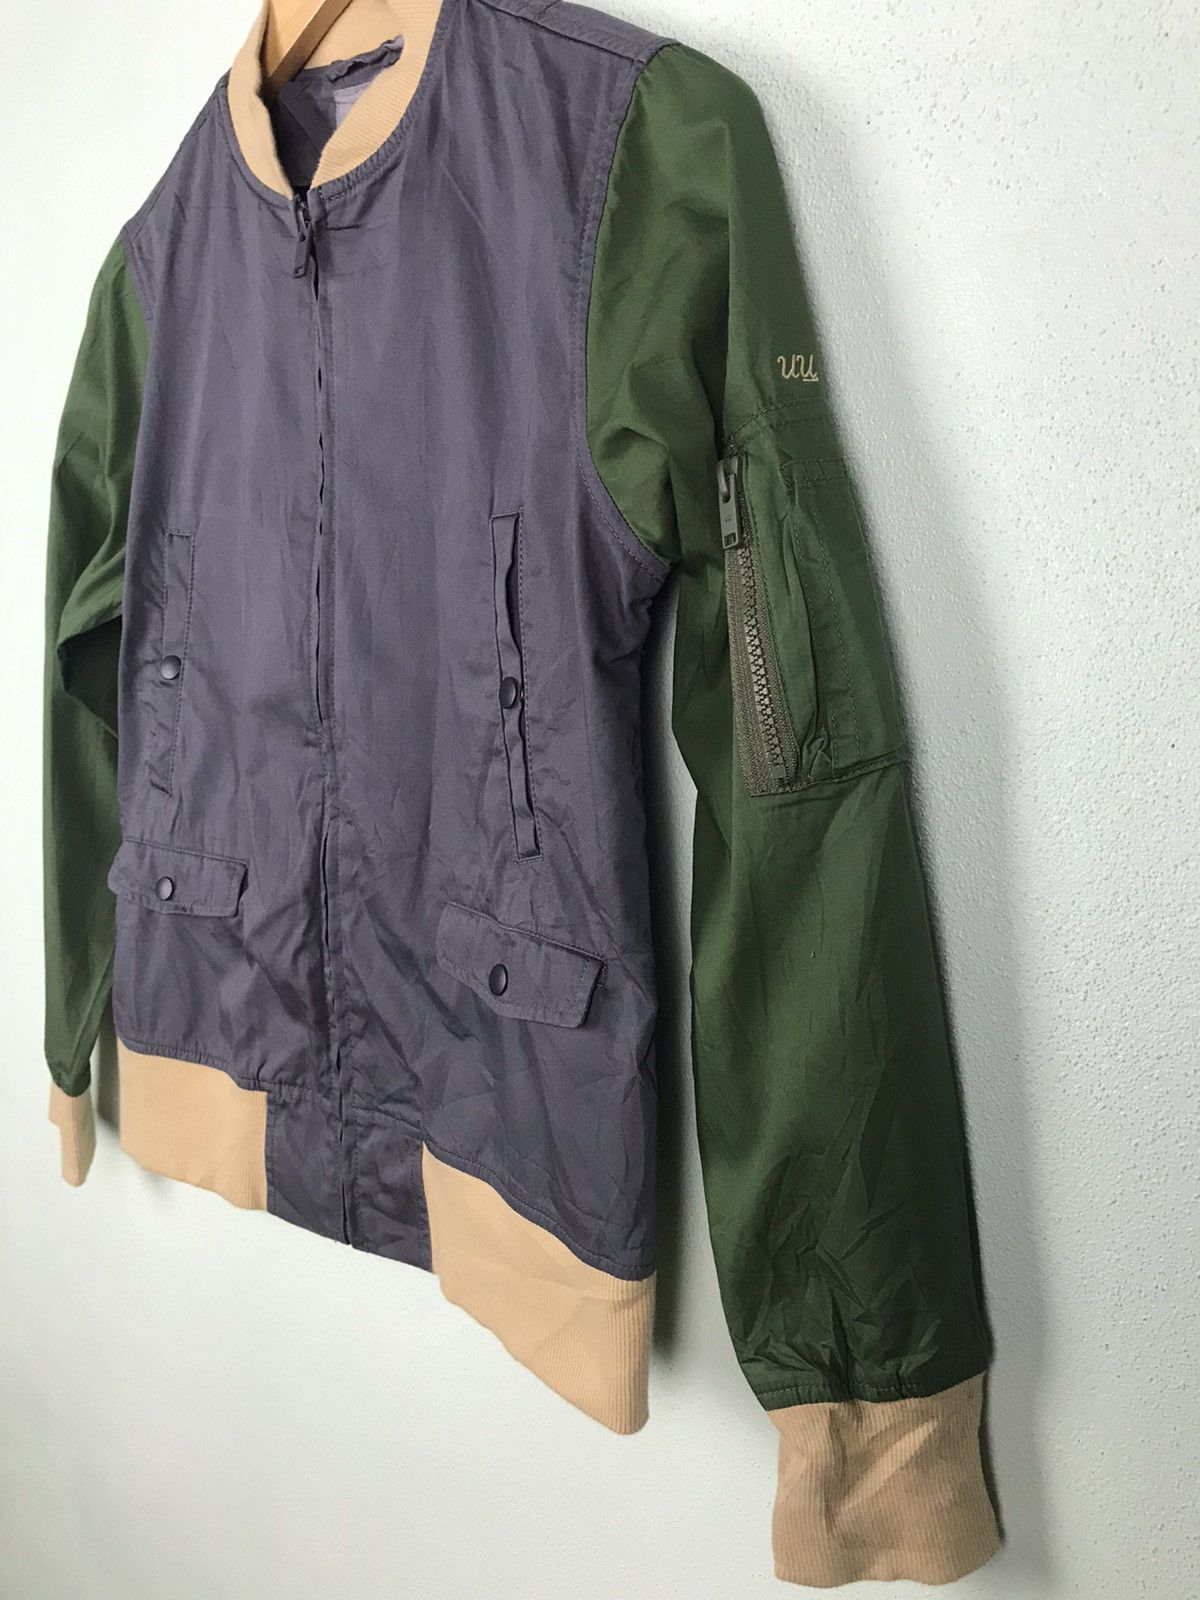 Uniqlo x undercover multicolor light jacket -gh0720 - 4